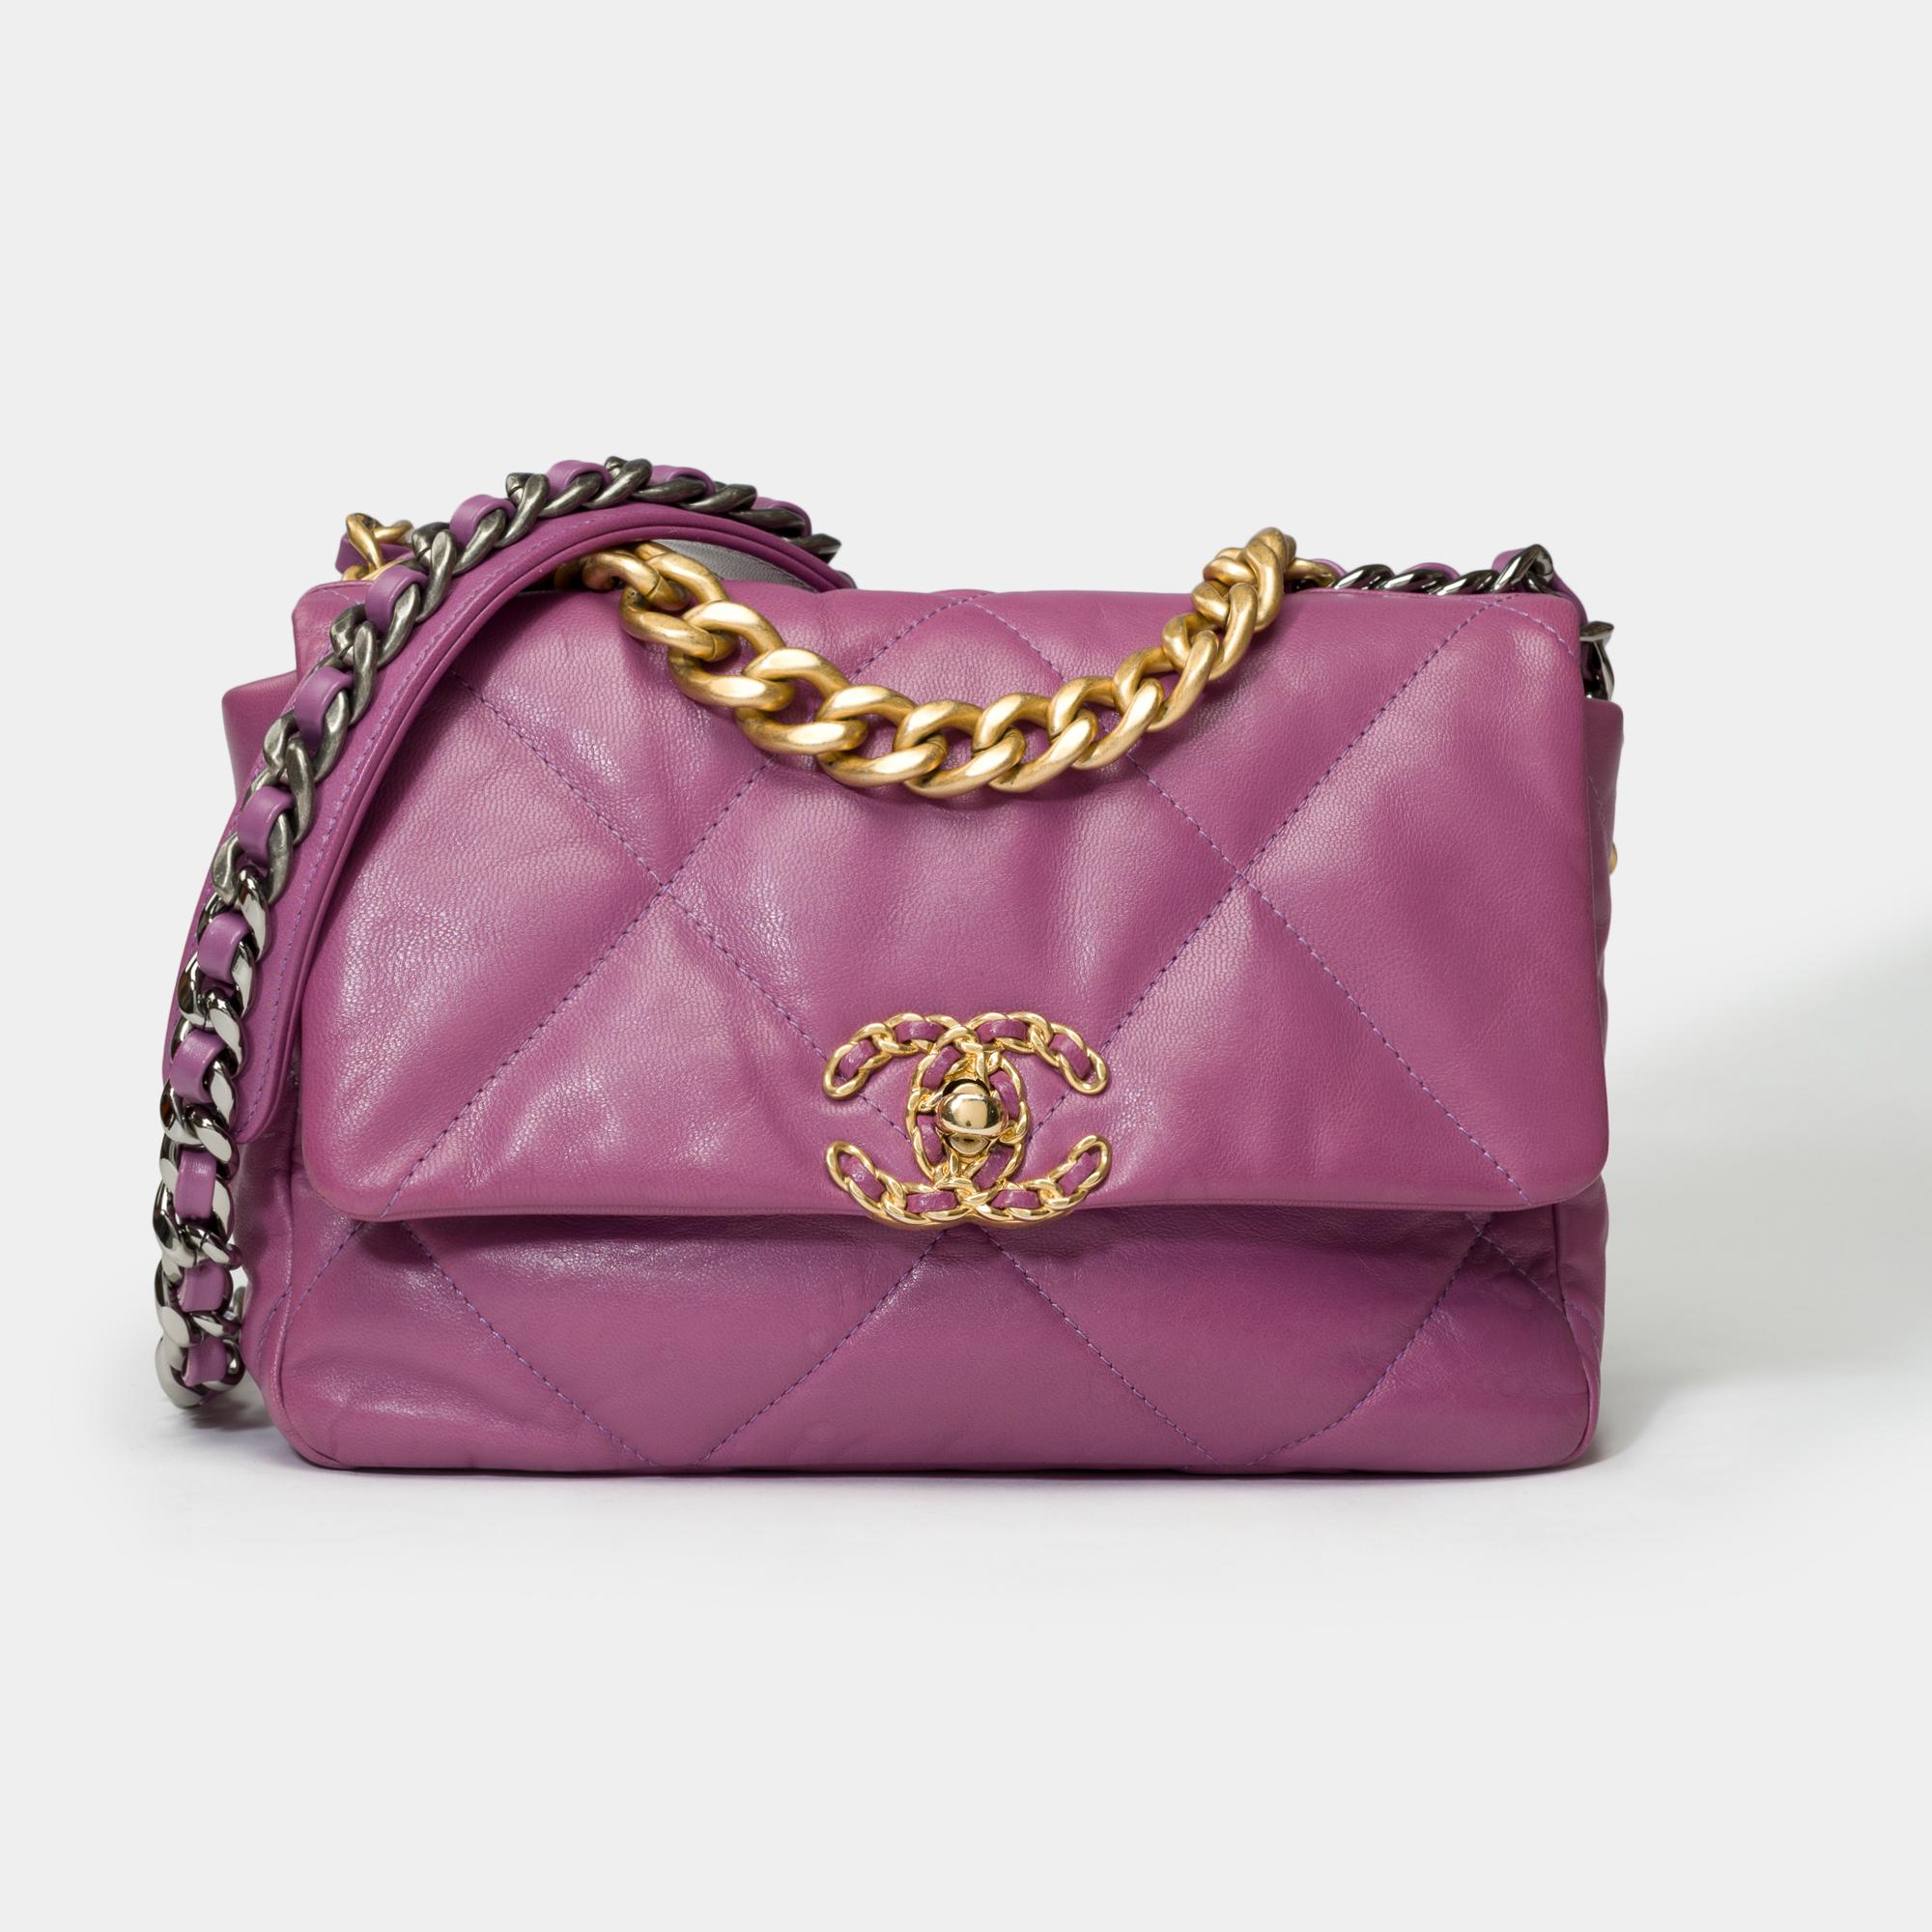 Sublime sac à bandoulière Chanel 19 en cuir matelassé violet, garniture en métal doré et argenté, poignée en métal doré vieilli, une anse en chaîne en métal doré et argenté entrelacée de cuir violet pour une bandoulière à main ou à l'épaule ou à